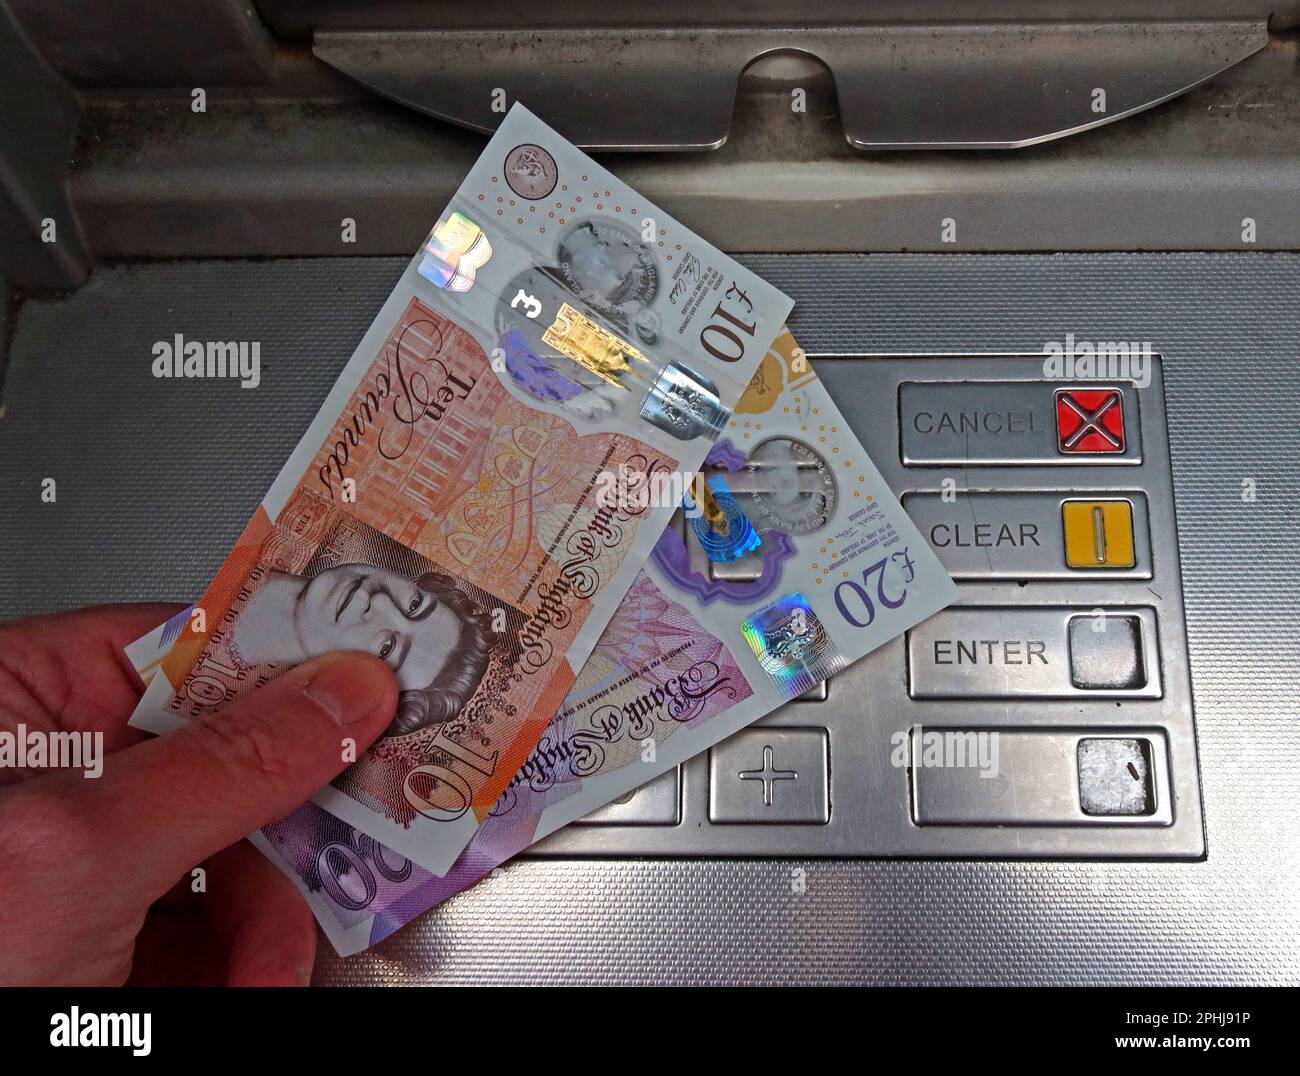 Geldscheine der Bank of England, ausgegeben von einem lokalen Geldautomaten, Geldautomat, Newcastle upon Tyne, Großbritannien, NE1 5pg Stockfoto